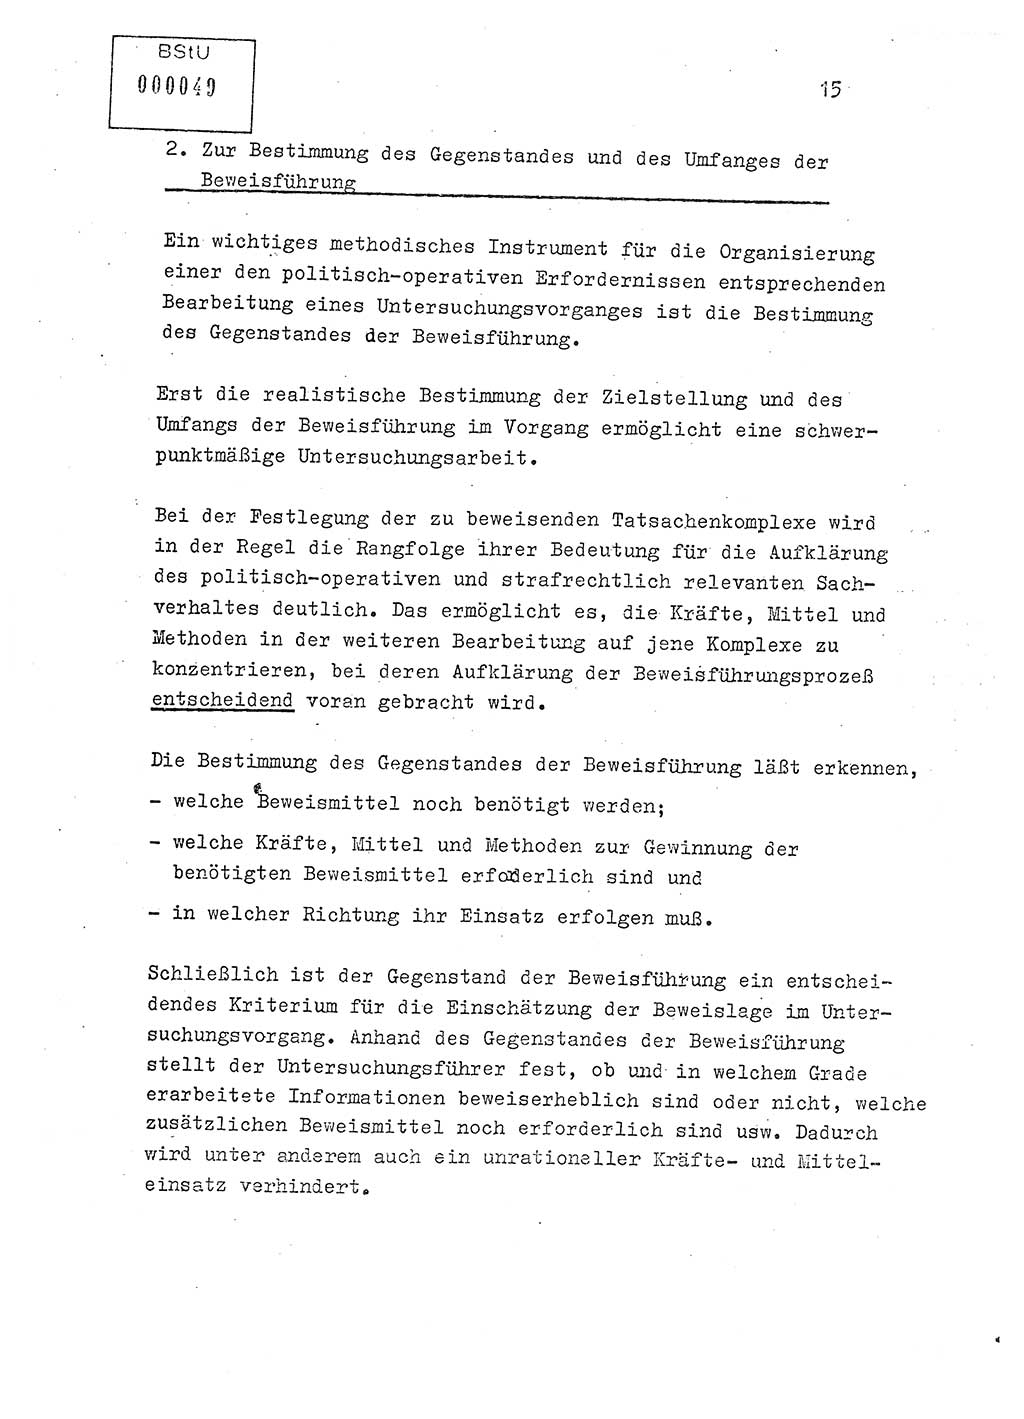 Lektion Ministerium für Staatssicherheit (MfS) [Deutsche Demokratische Republik (DDR)], Hauptabteilung (HA) Ⅸ, Berlin 1979, Seite 15 (Lekt. Bew.-Fü. EV MfS DDR HA Ⅸ 1979, S. 15)